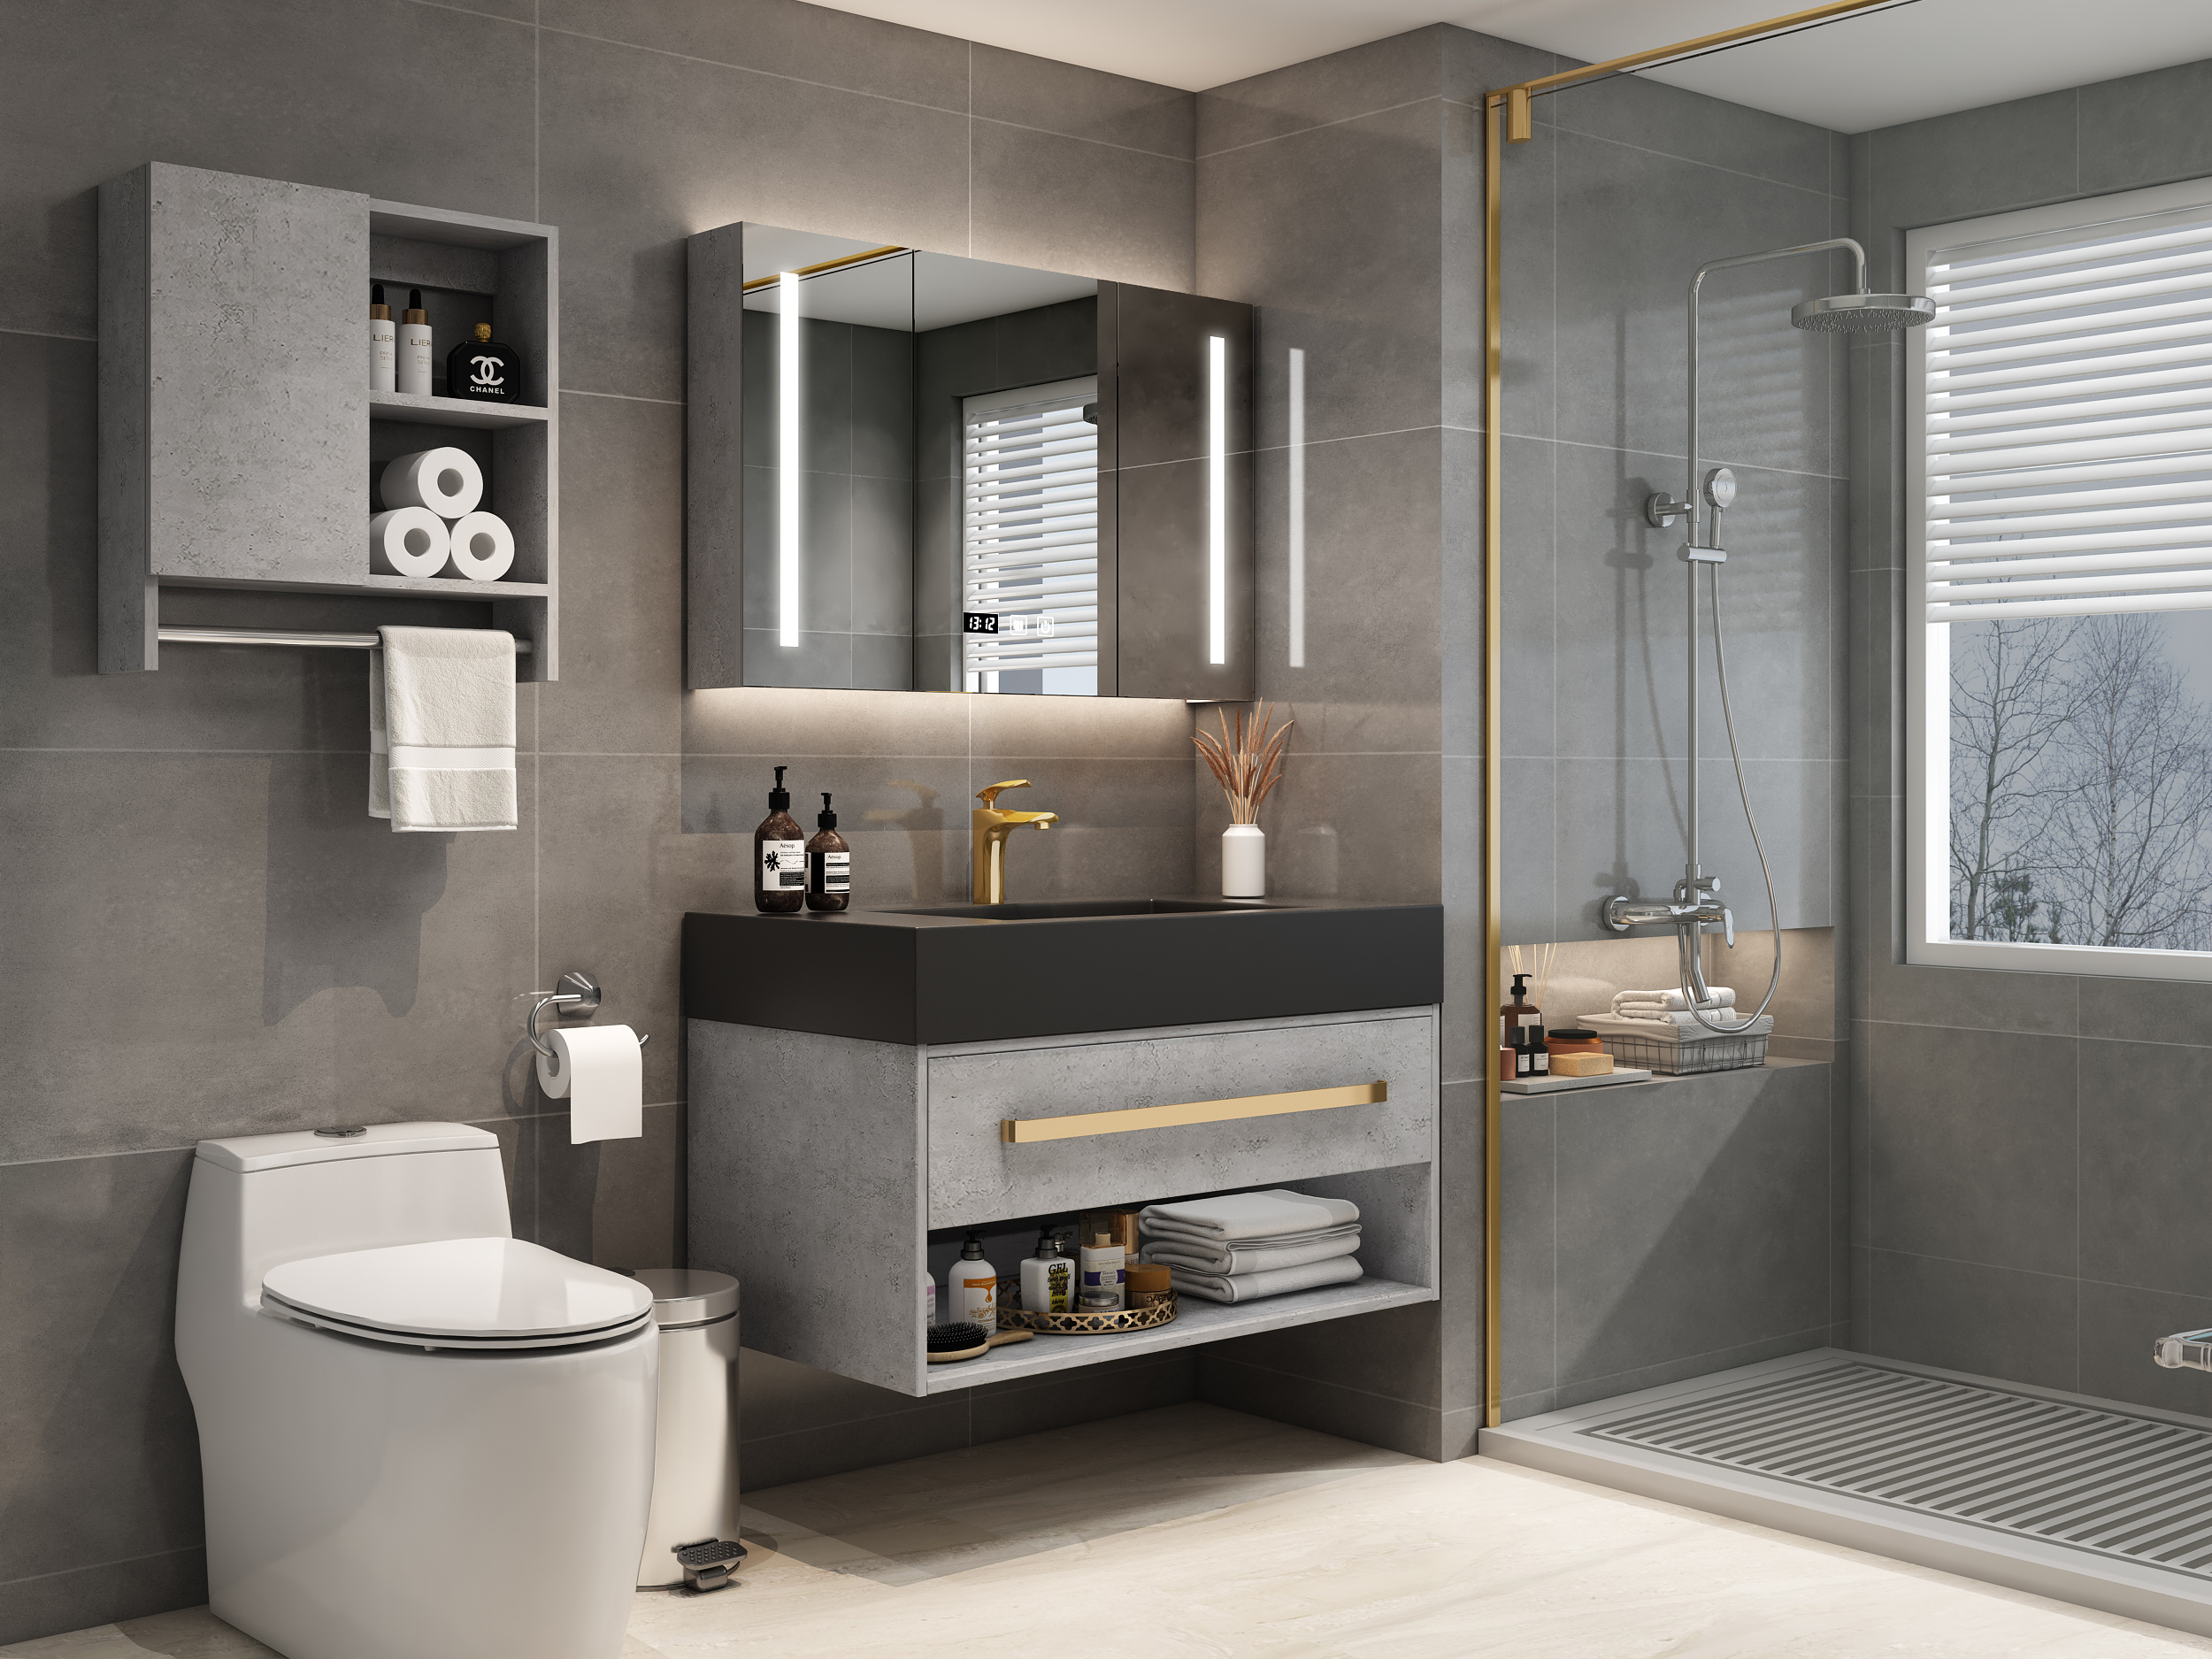 同一浴室空间 21种不同设计风格(2) - 设计之家